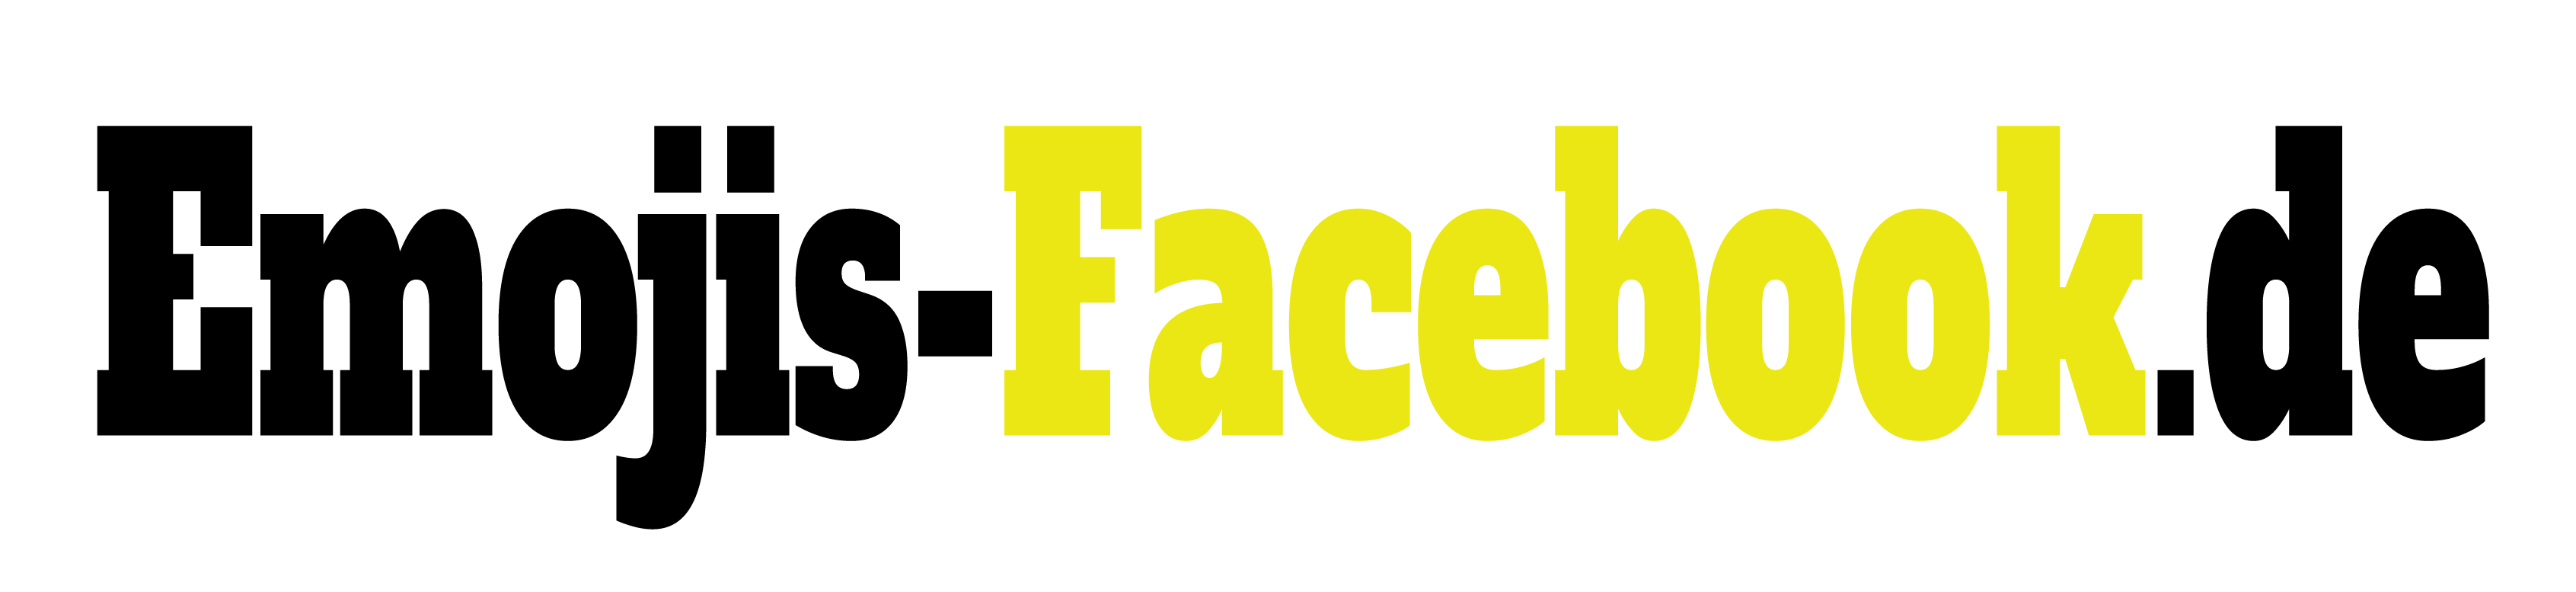 Emojis-facebook.de Logo